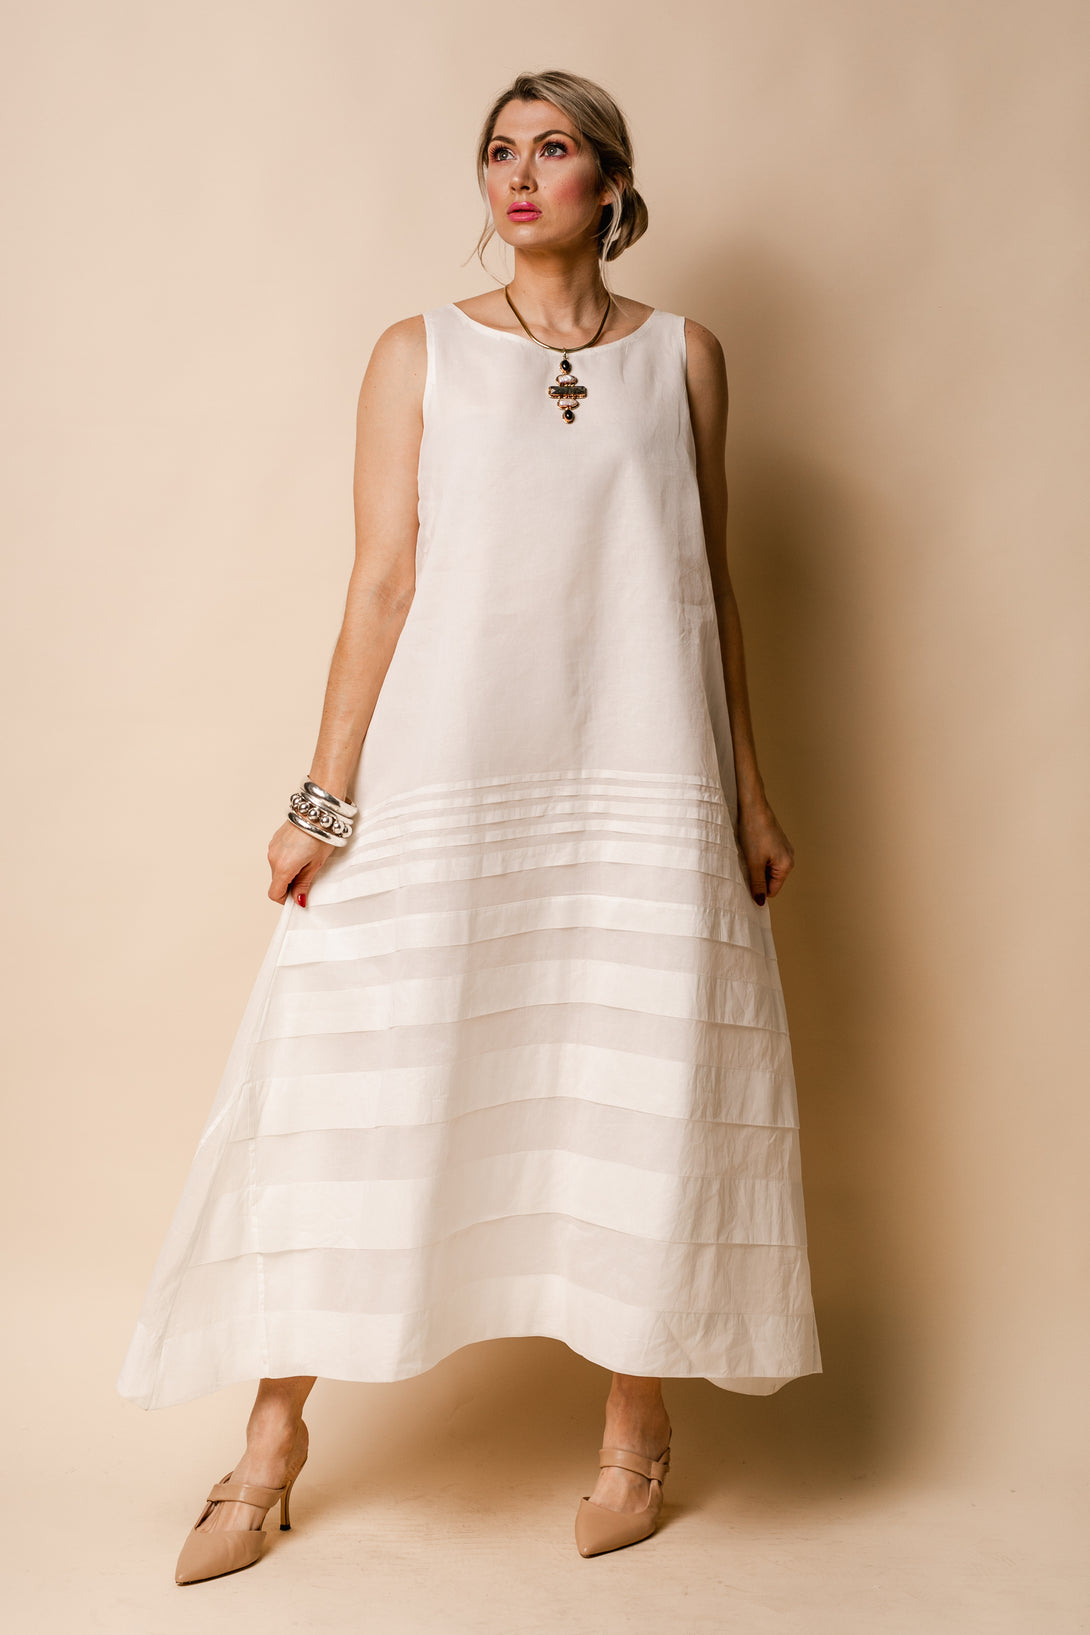 Molly Organza Dress in Cream - Imagine Fashion